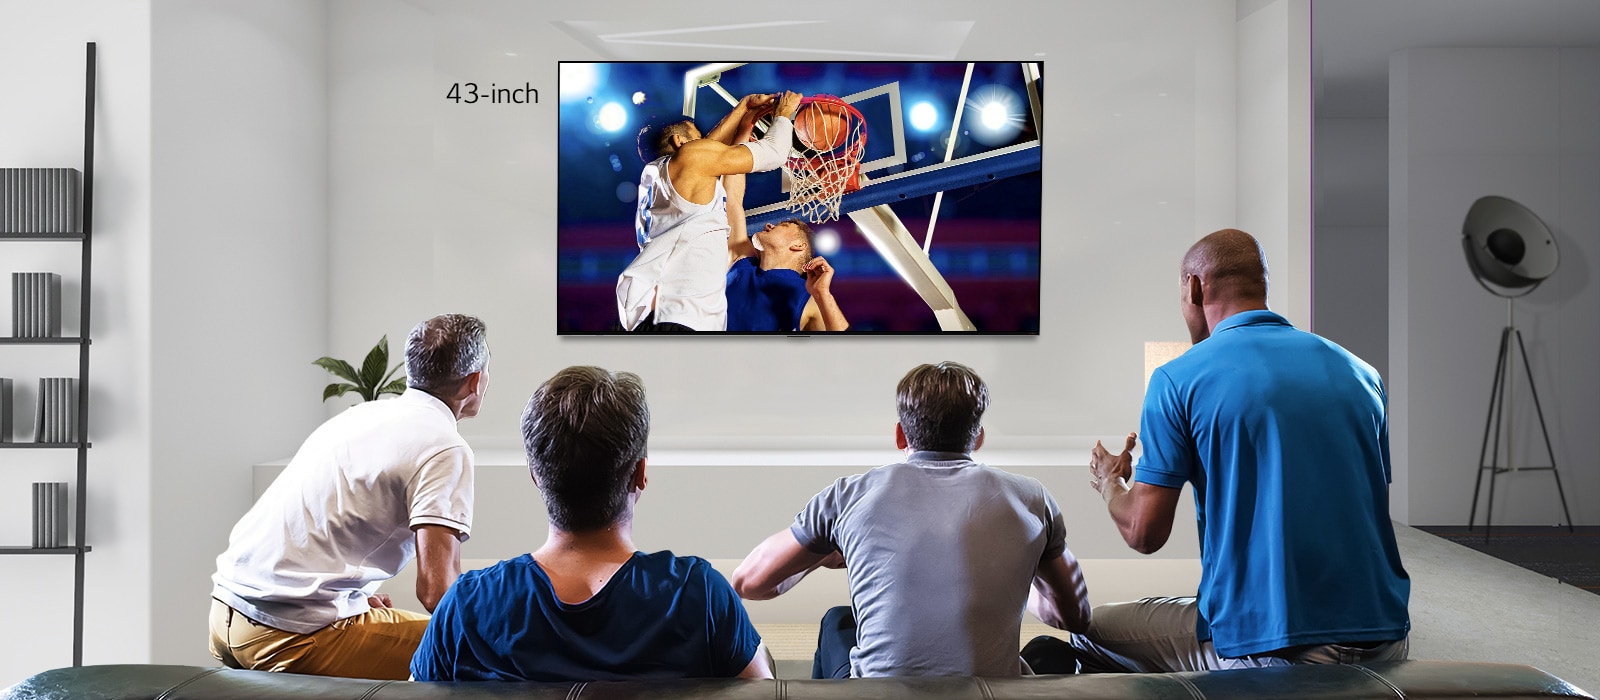 Achteraanzicht van een aan de muur gemonteerde tv met een basketbalwedstrijd, terwijl vier mannen kijken. Door naar links en rechts te scrollen zie je het verschil in grootte tussen een 43-inch en 86-inch scherm.